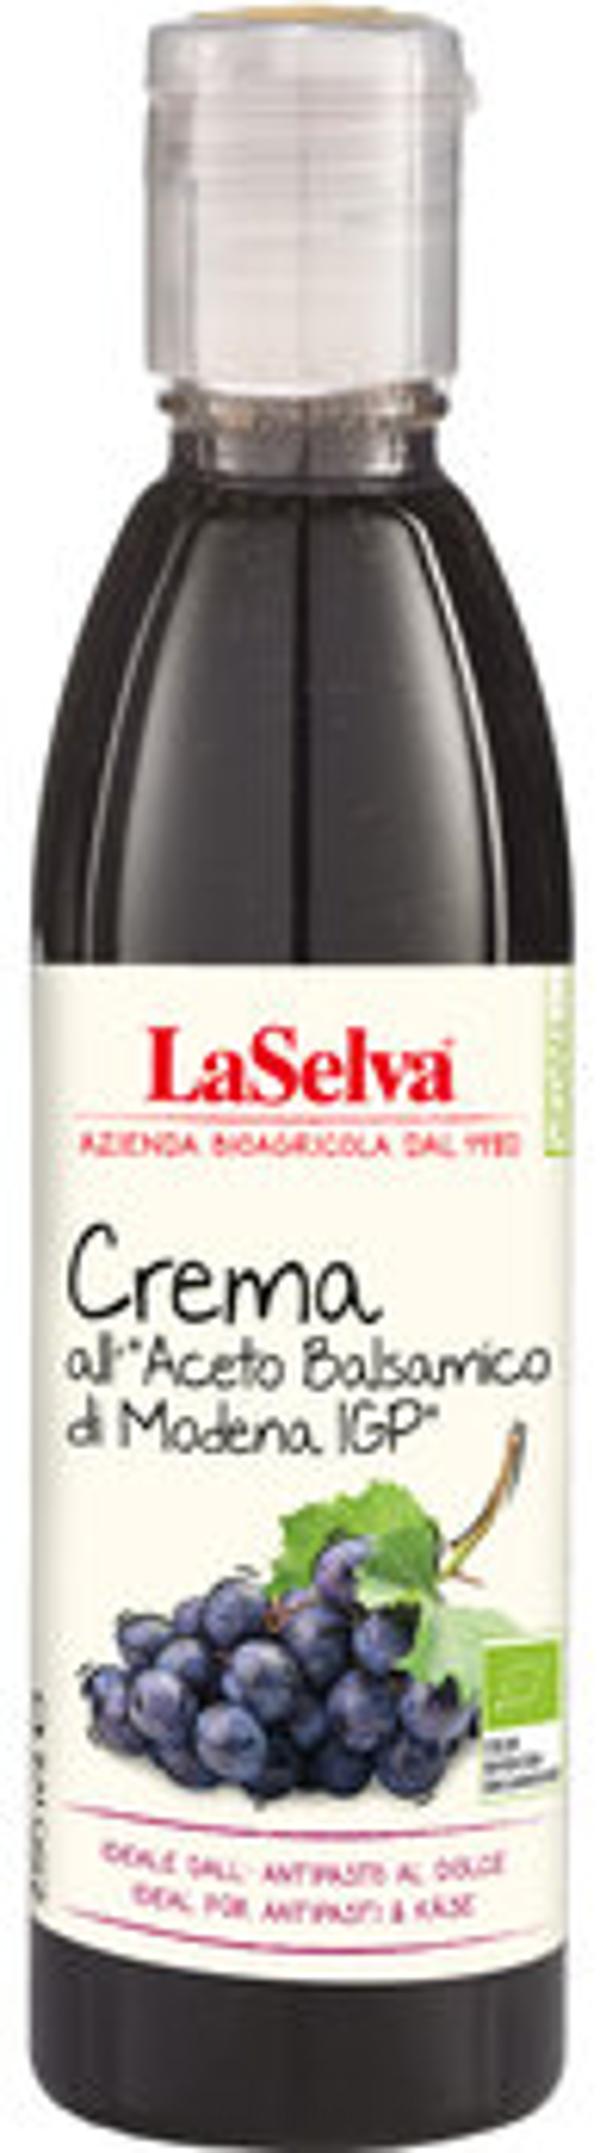 Produktfoto zu Balsamico Creme klassisch